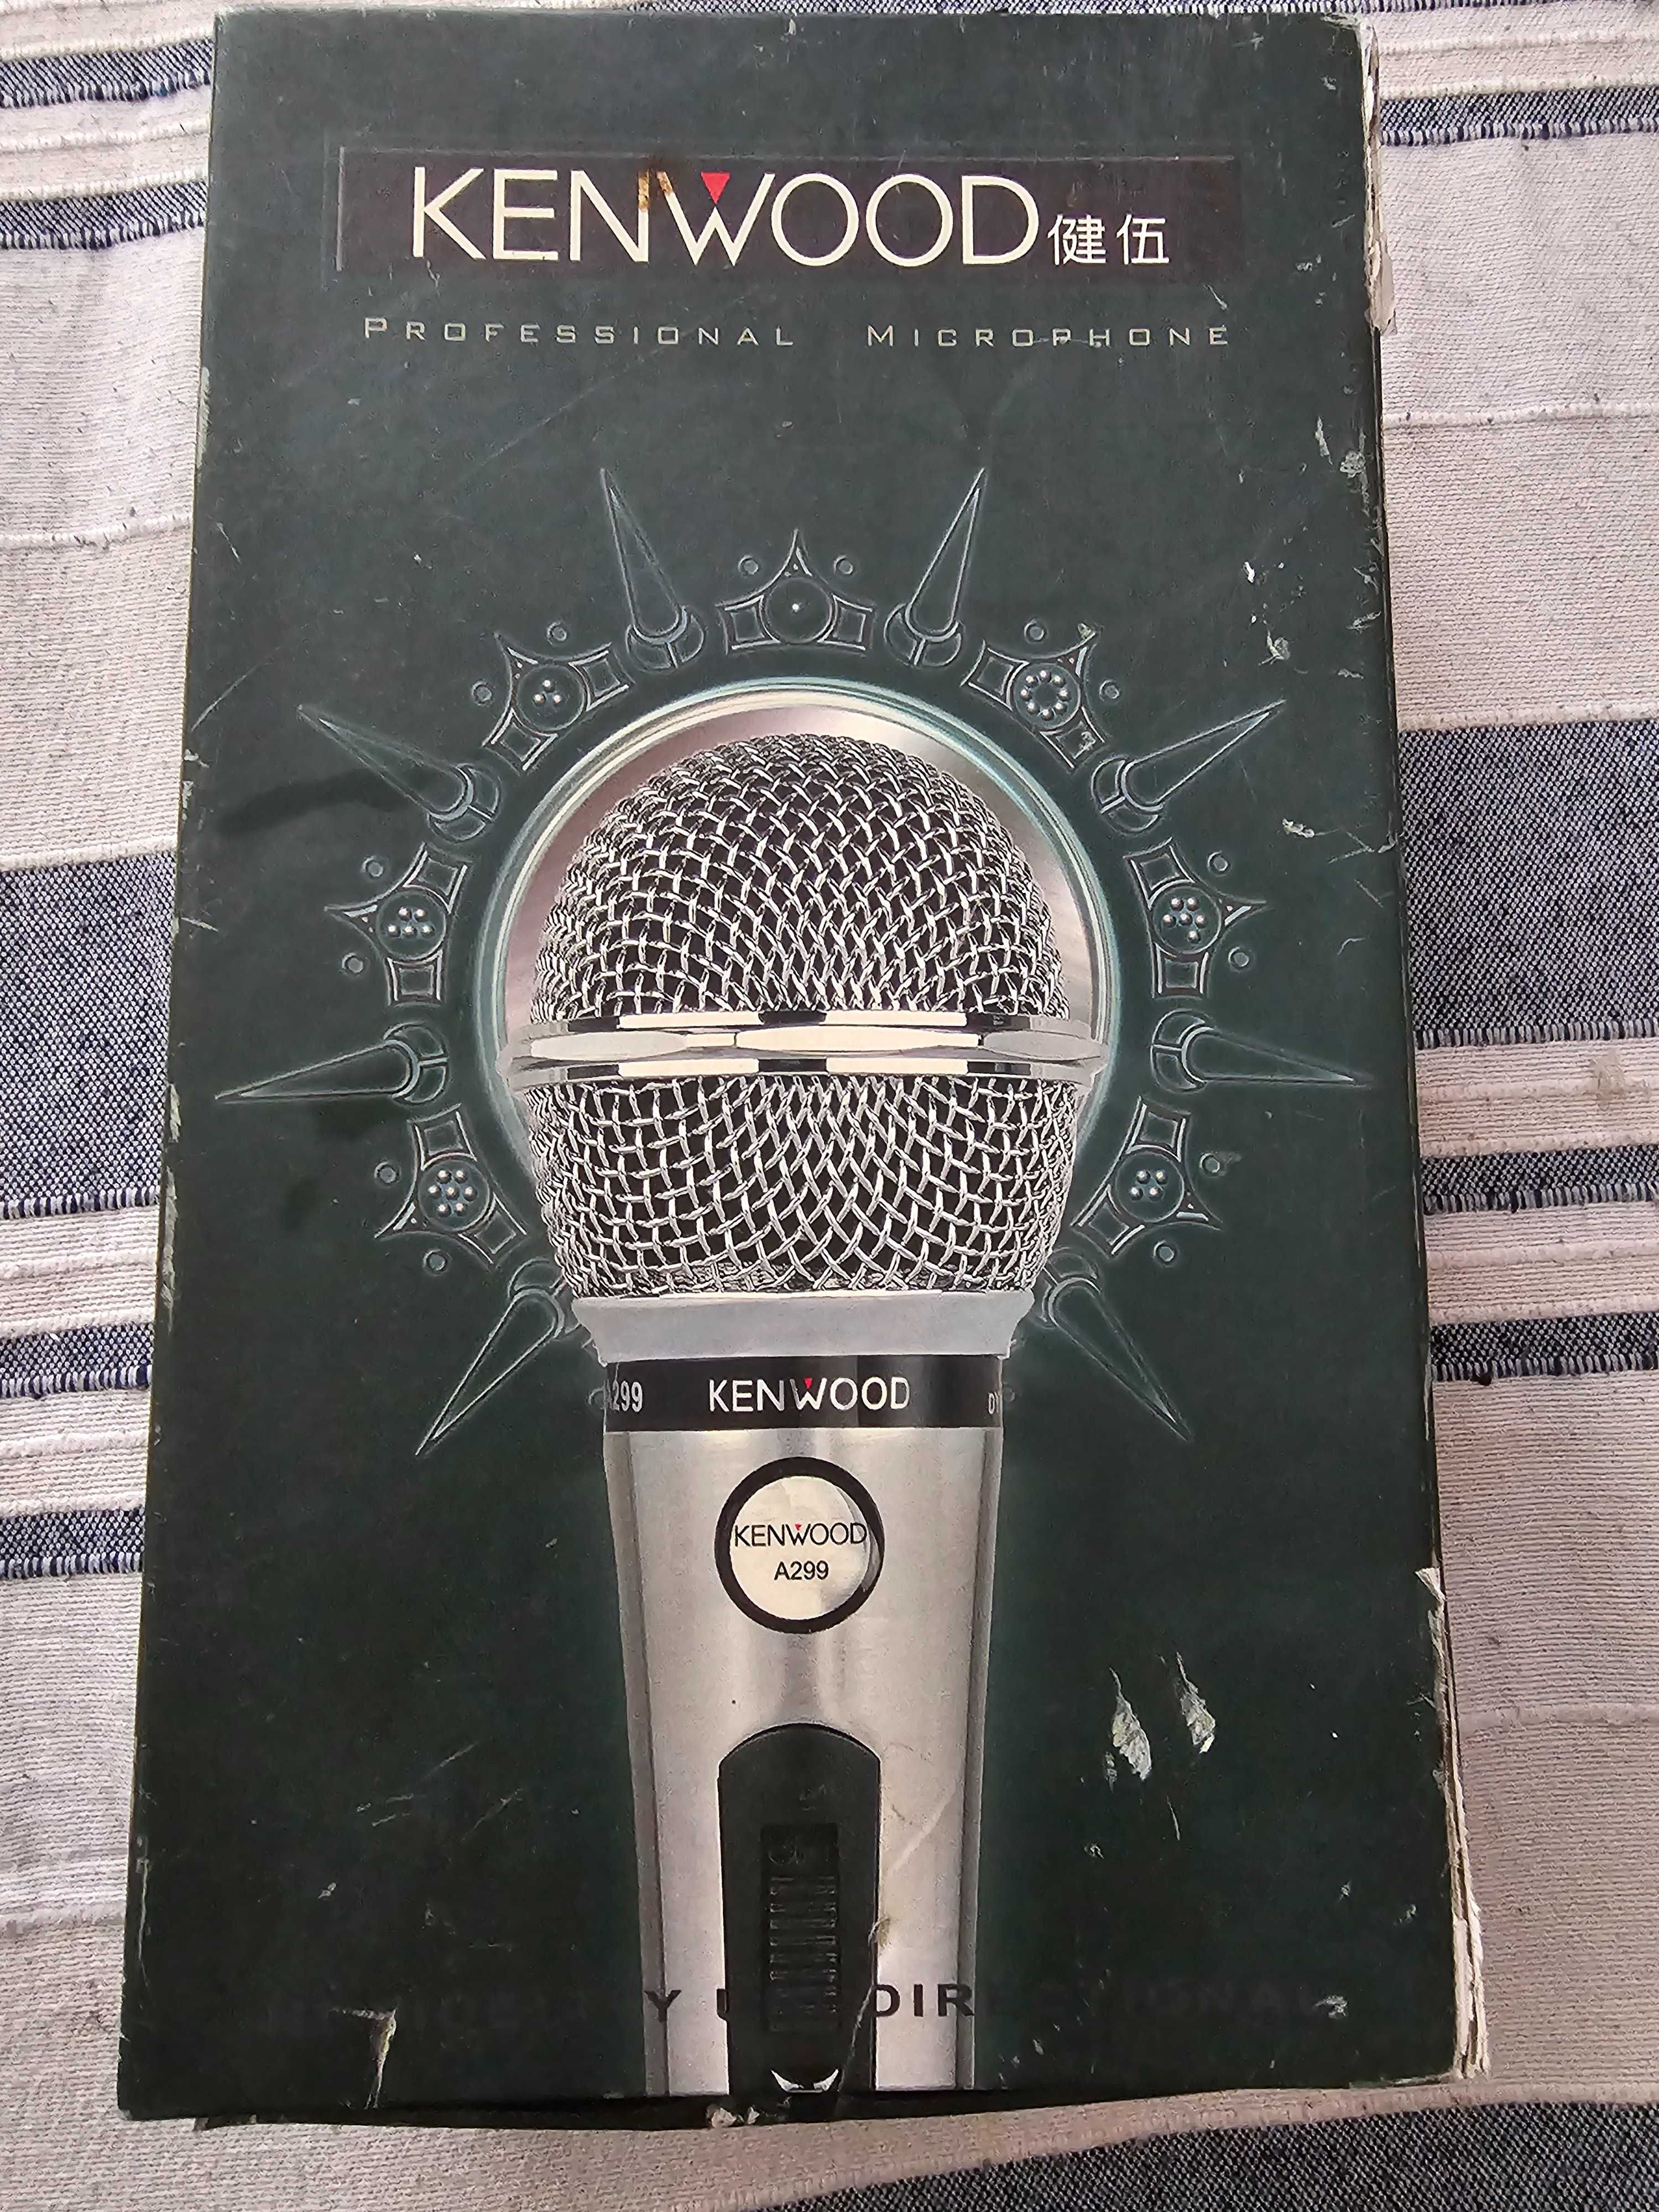 Микрофон kenwood dm-a299 с коробкой